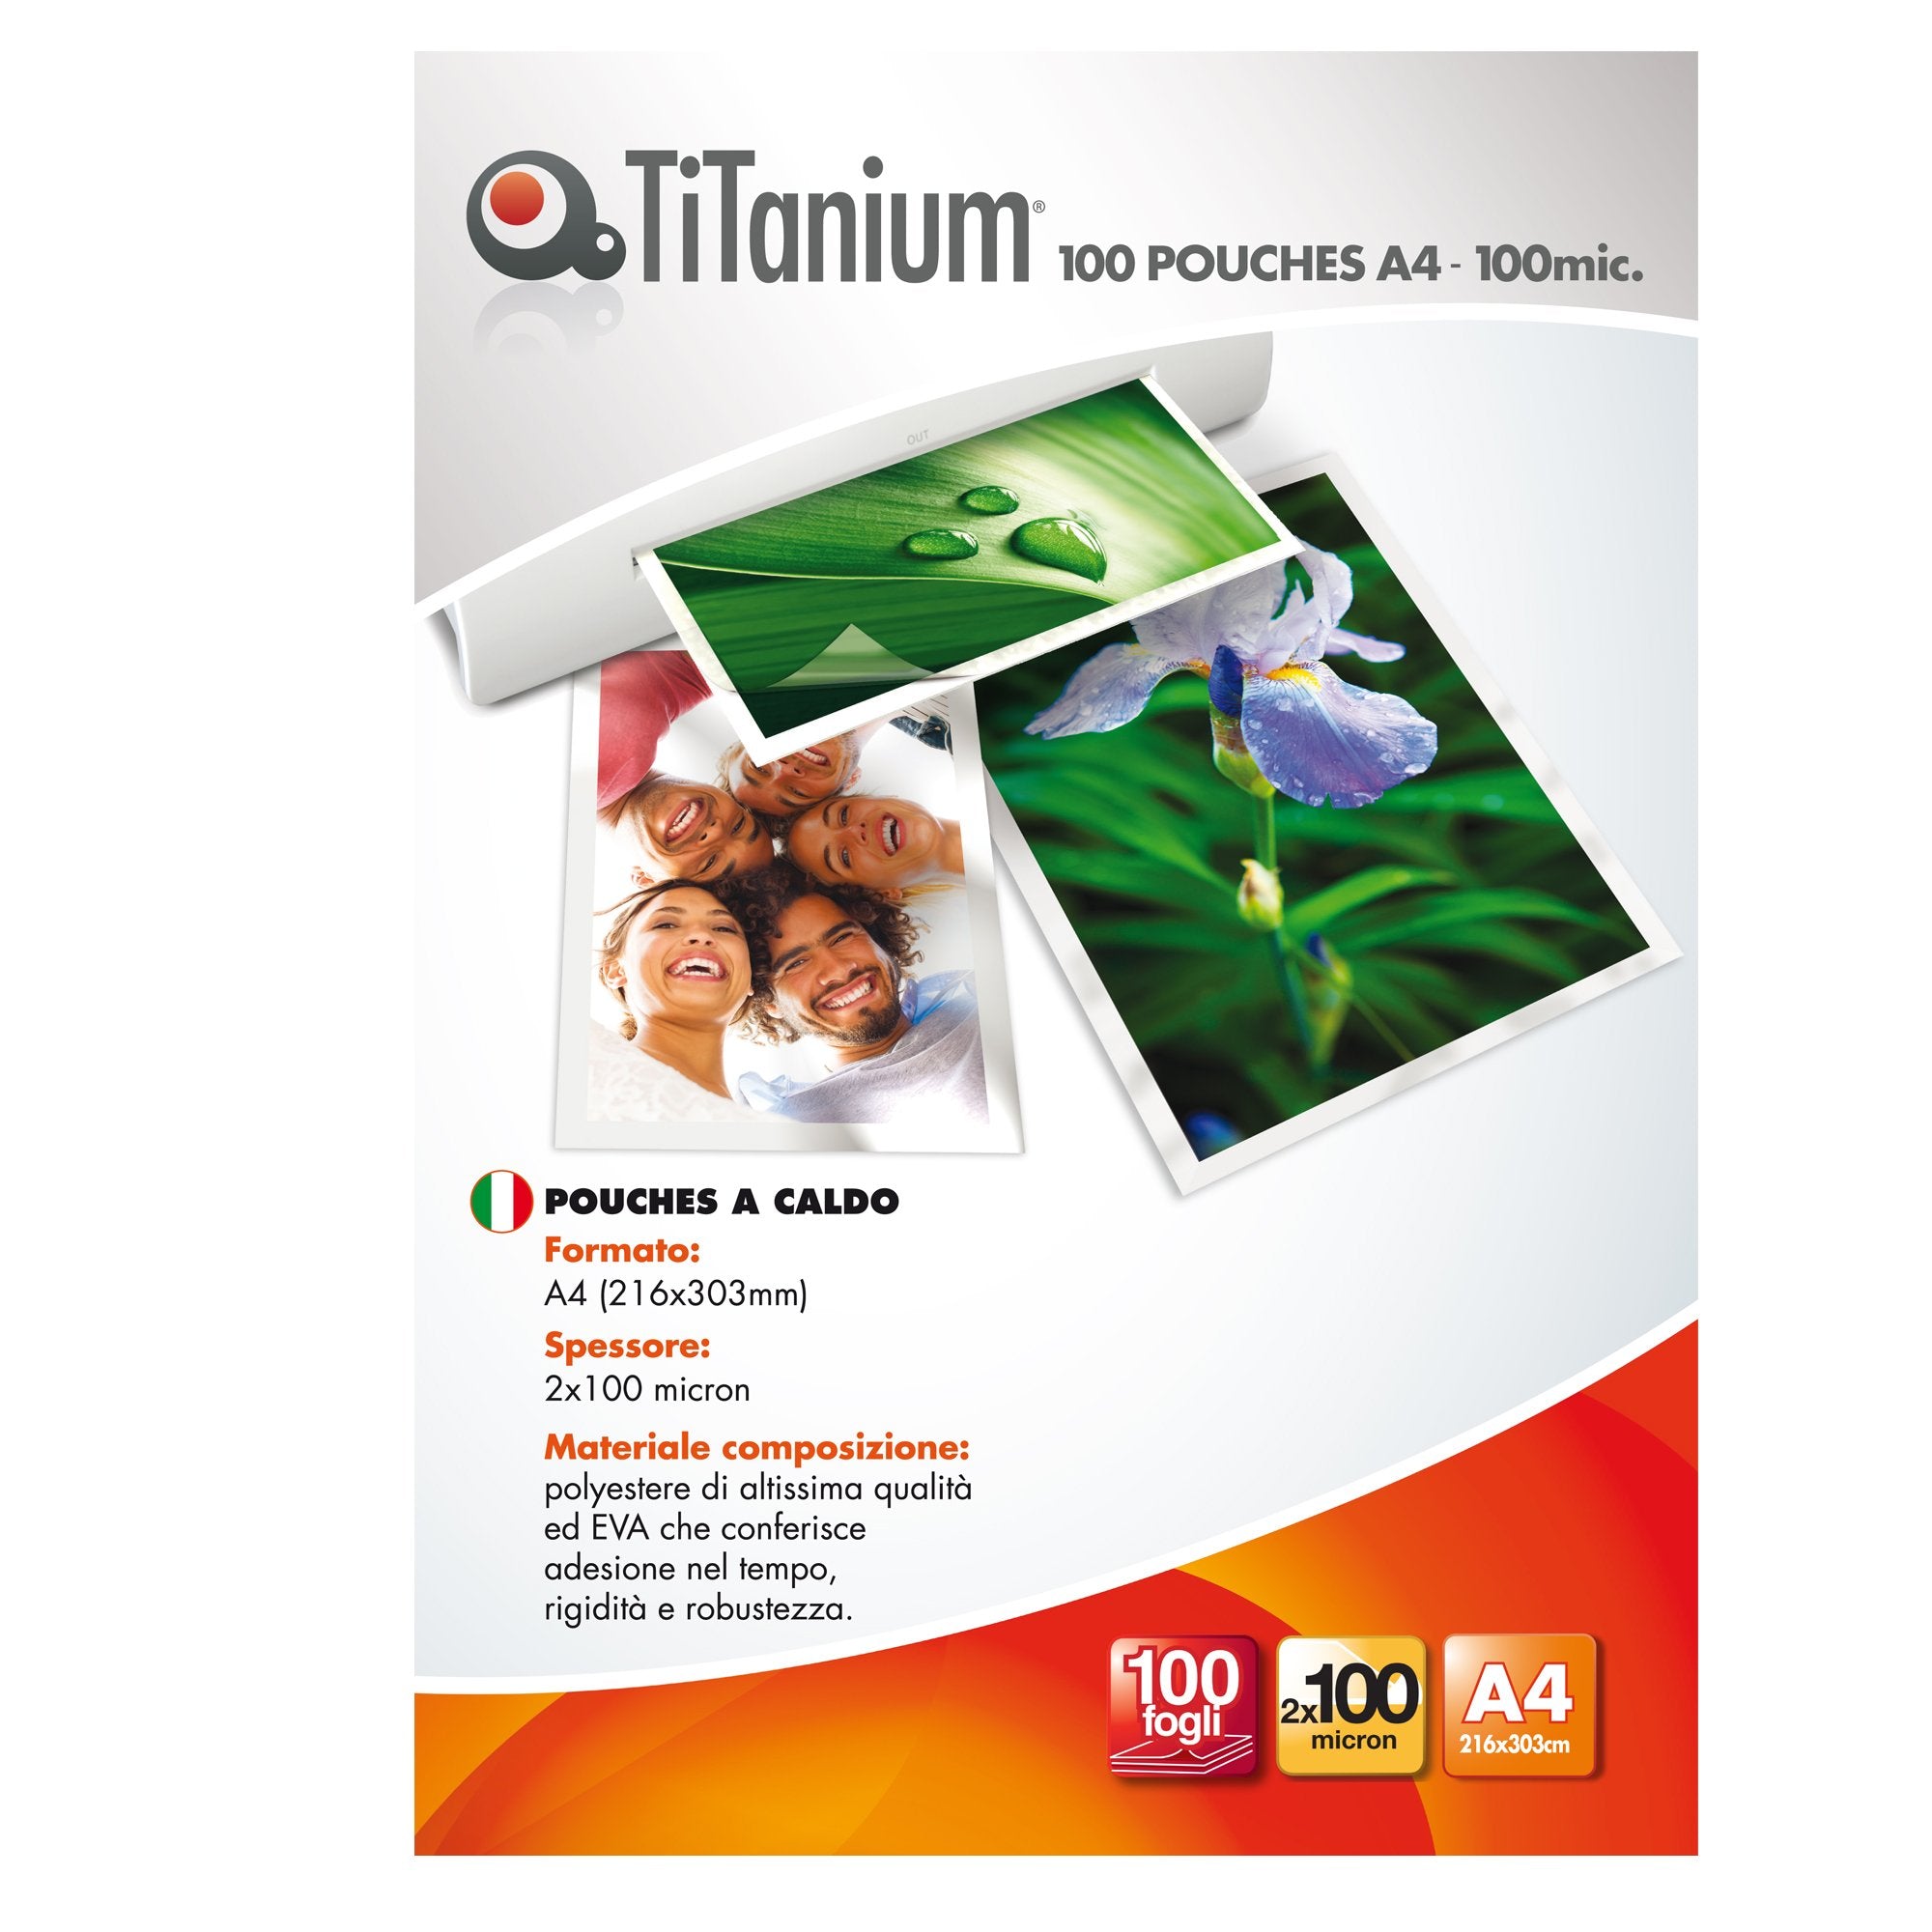 titanium-100-pouches-216x303mm-a4-100my